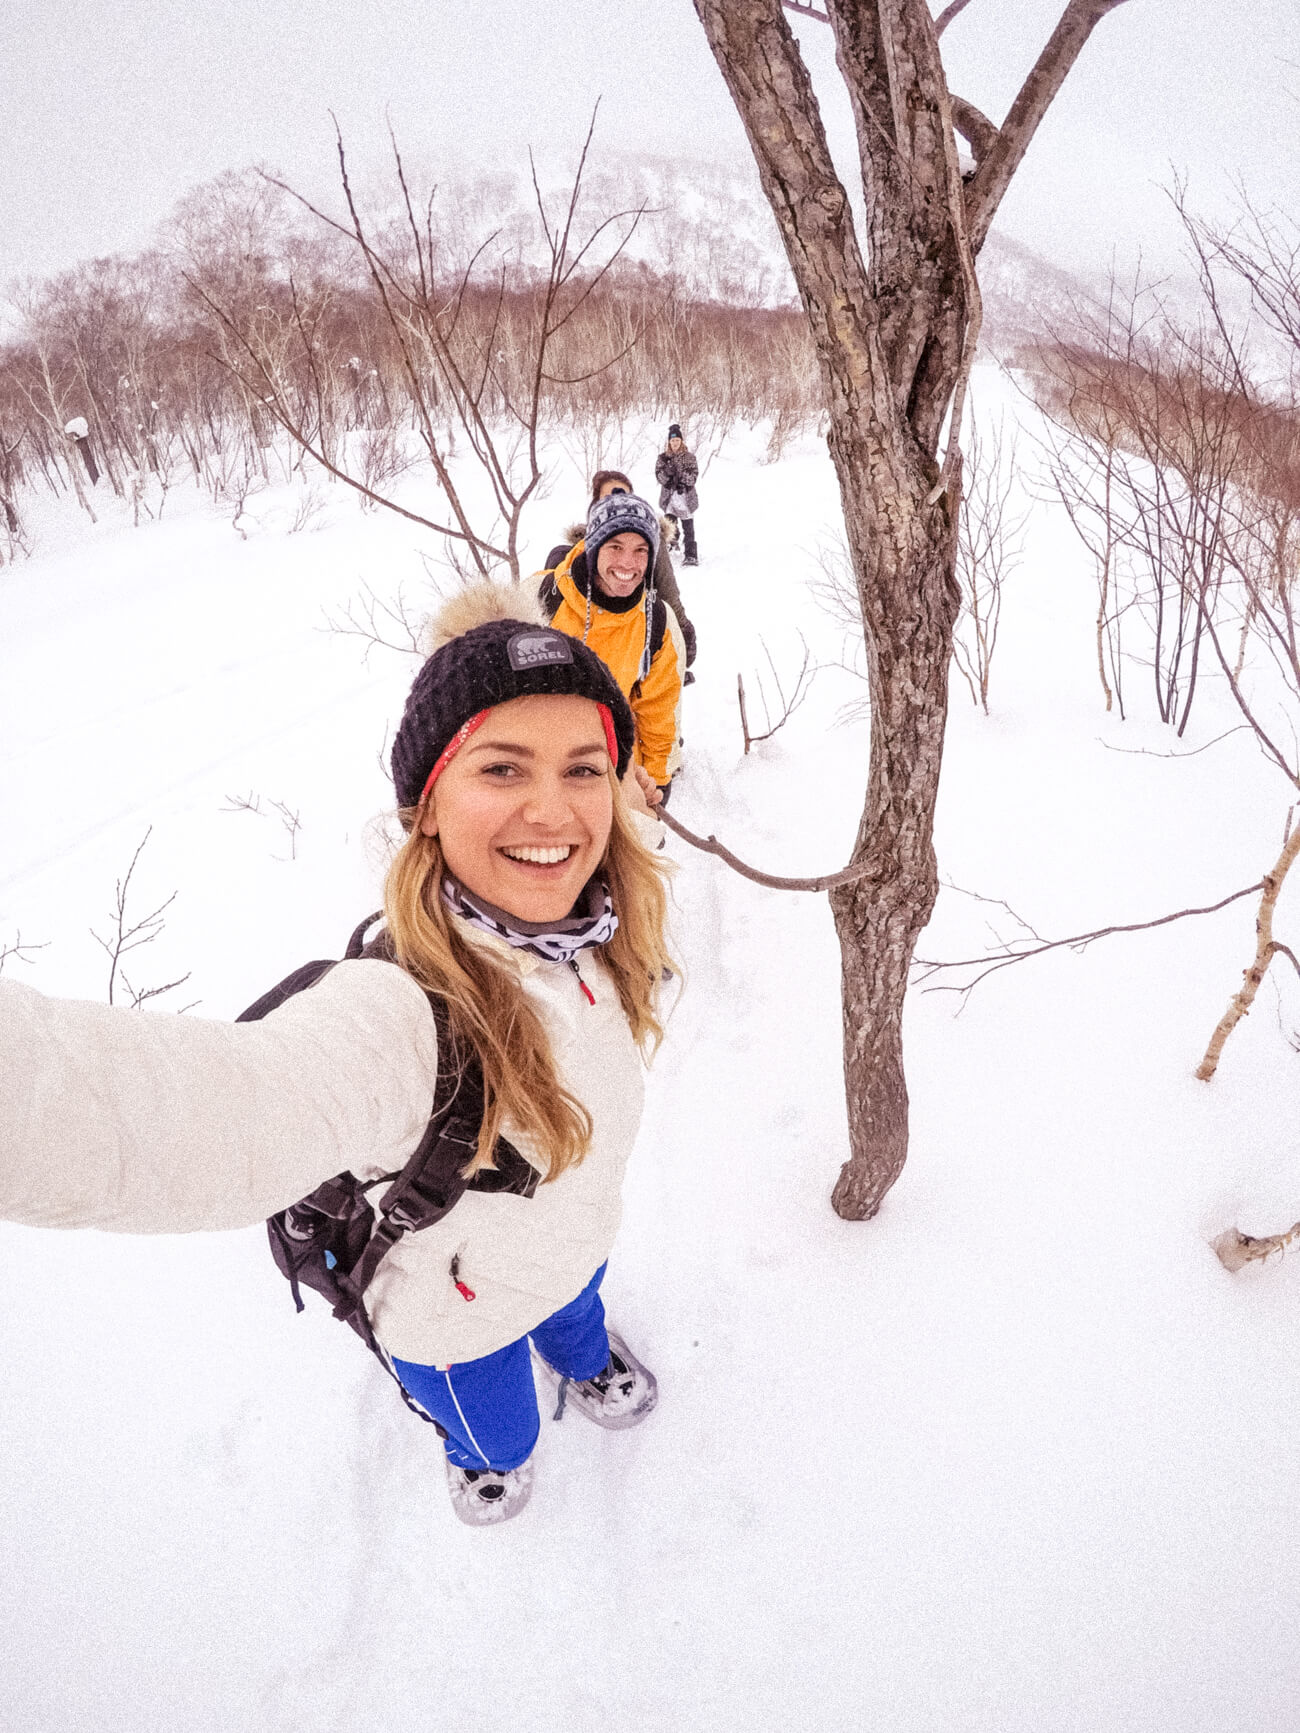 Skiing in Niseko, Japan with GoPro and The Ski Week